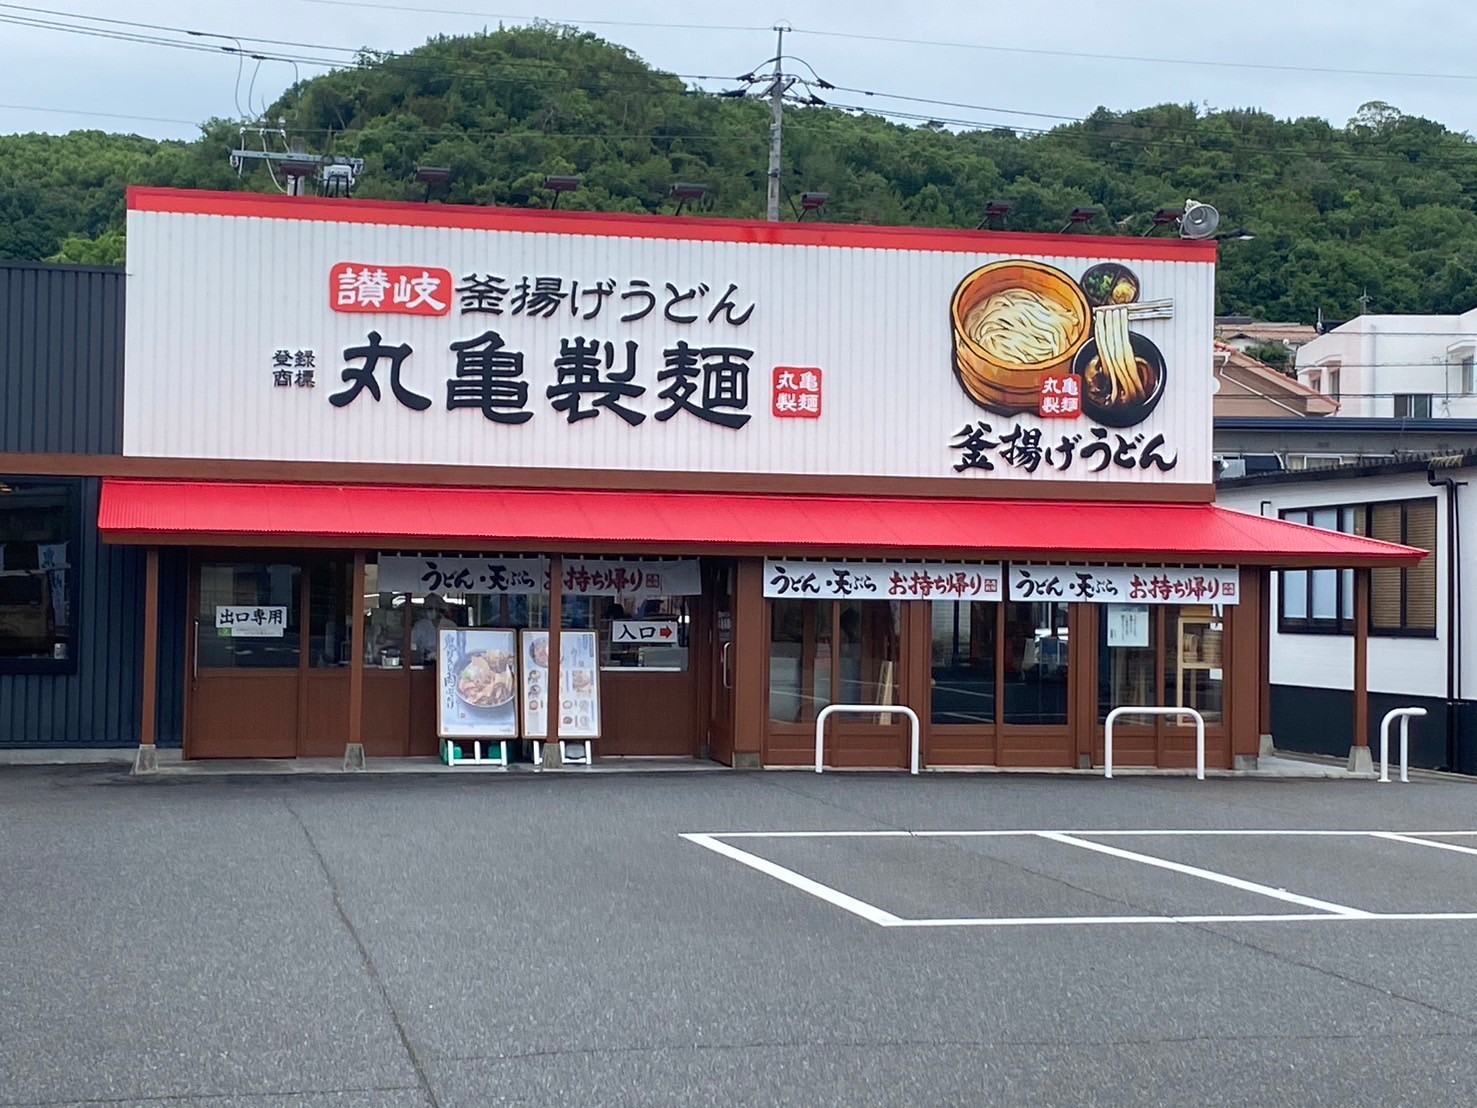 丸亀製麺 岡山インター店